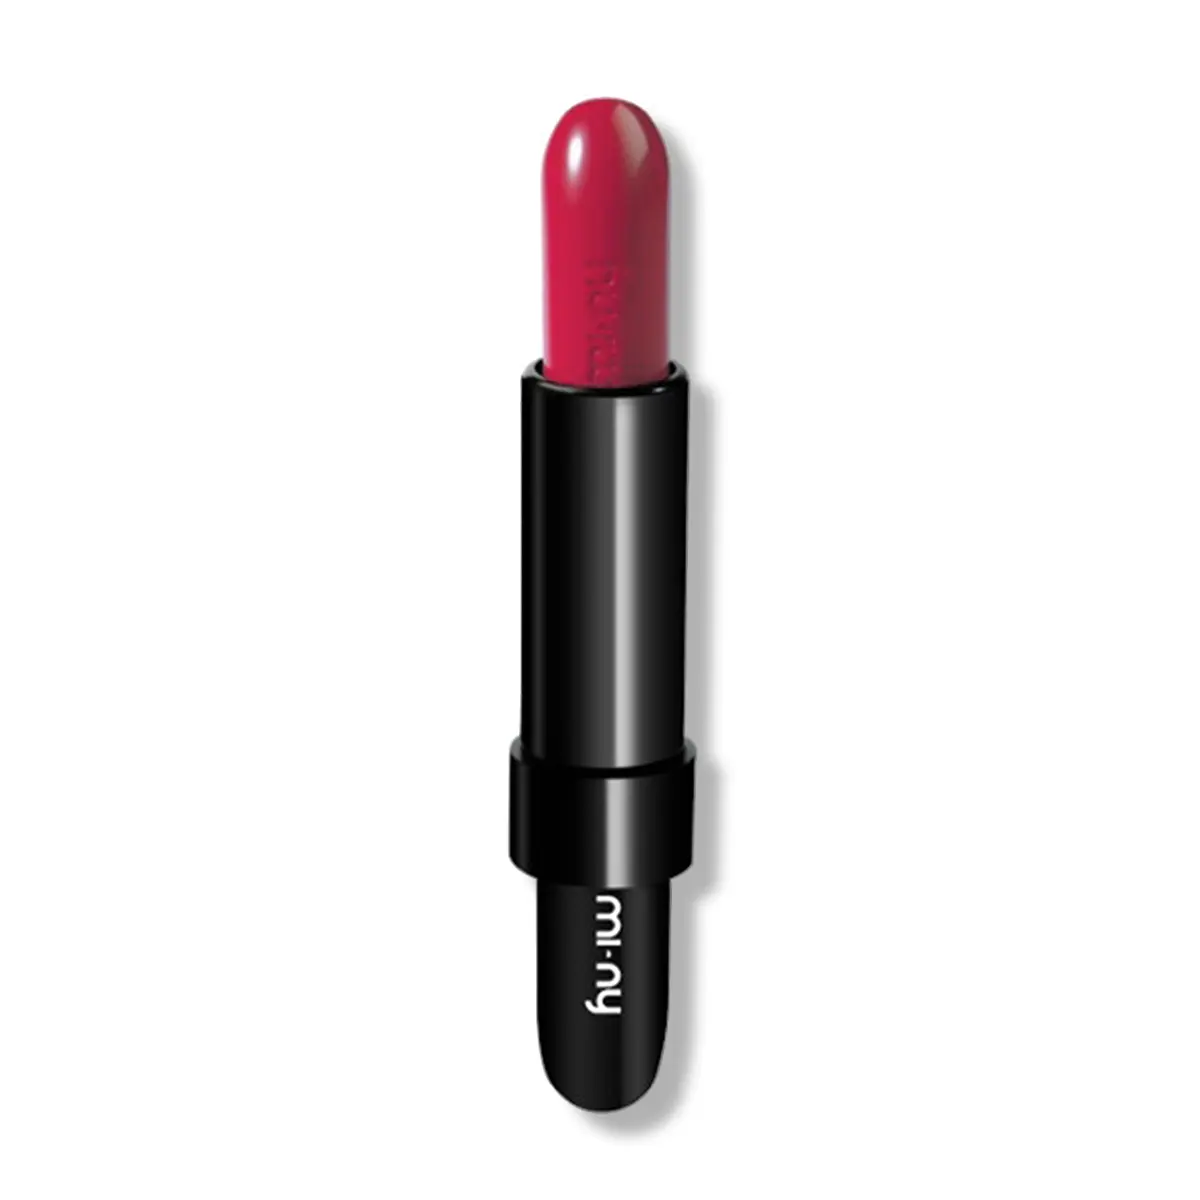 Hoge Kwaliteit Italiaanse Romige Lipstick N. 12 Passionate-Kiss Naar Parijs, Ultra Heldere En Zacht Effect, Met Shea Butter & Jojoba Olie